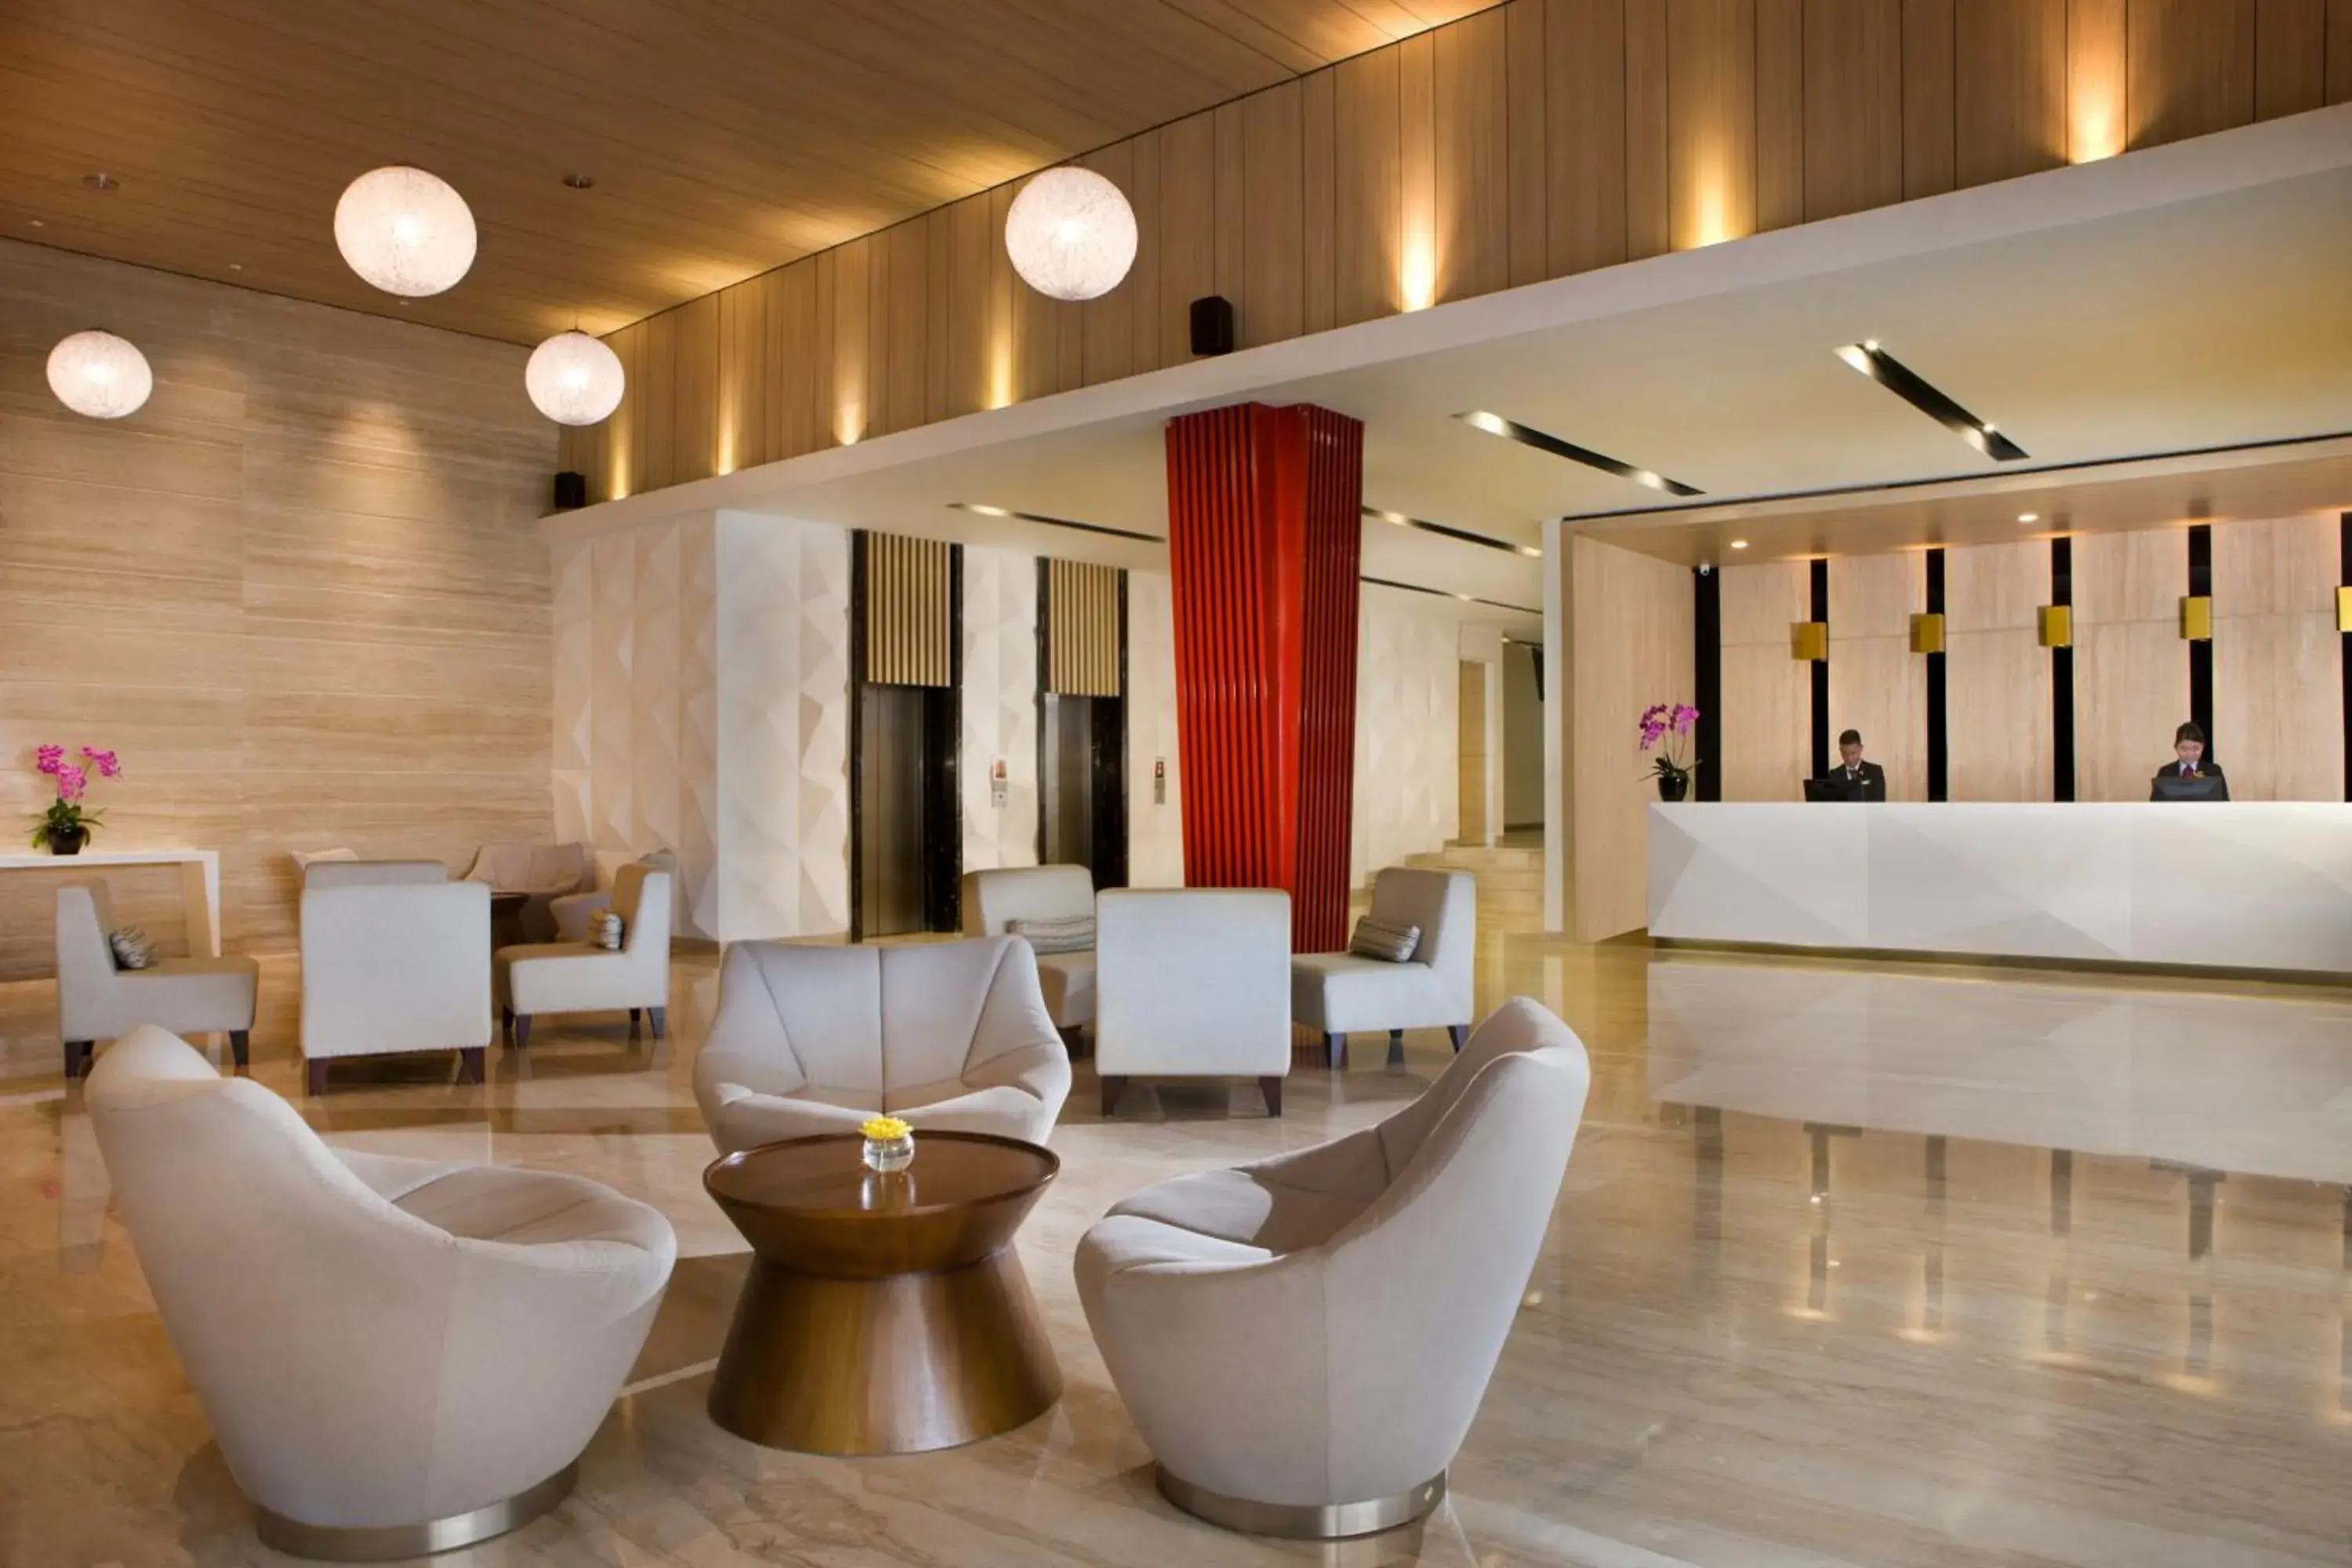 Lobby or reception, Lobby/Reception in Hotel Santika Mega City - Bekasi